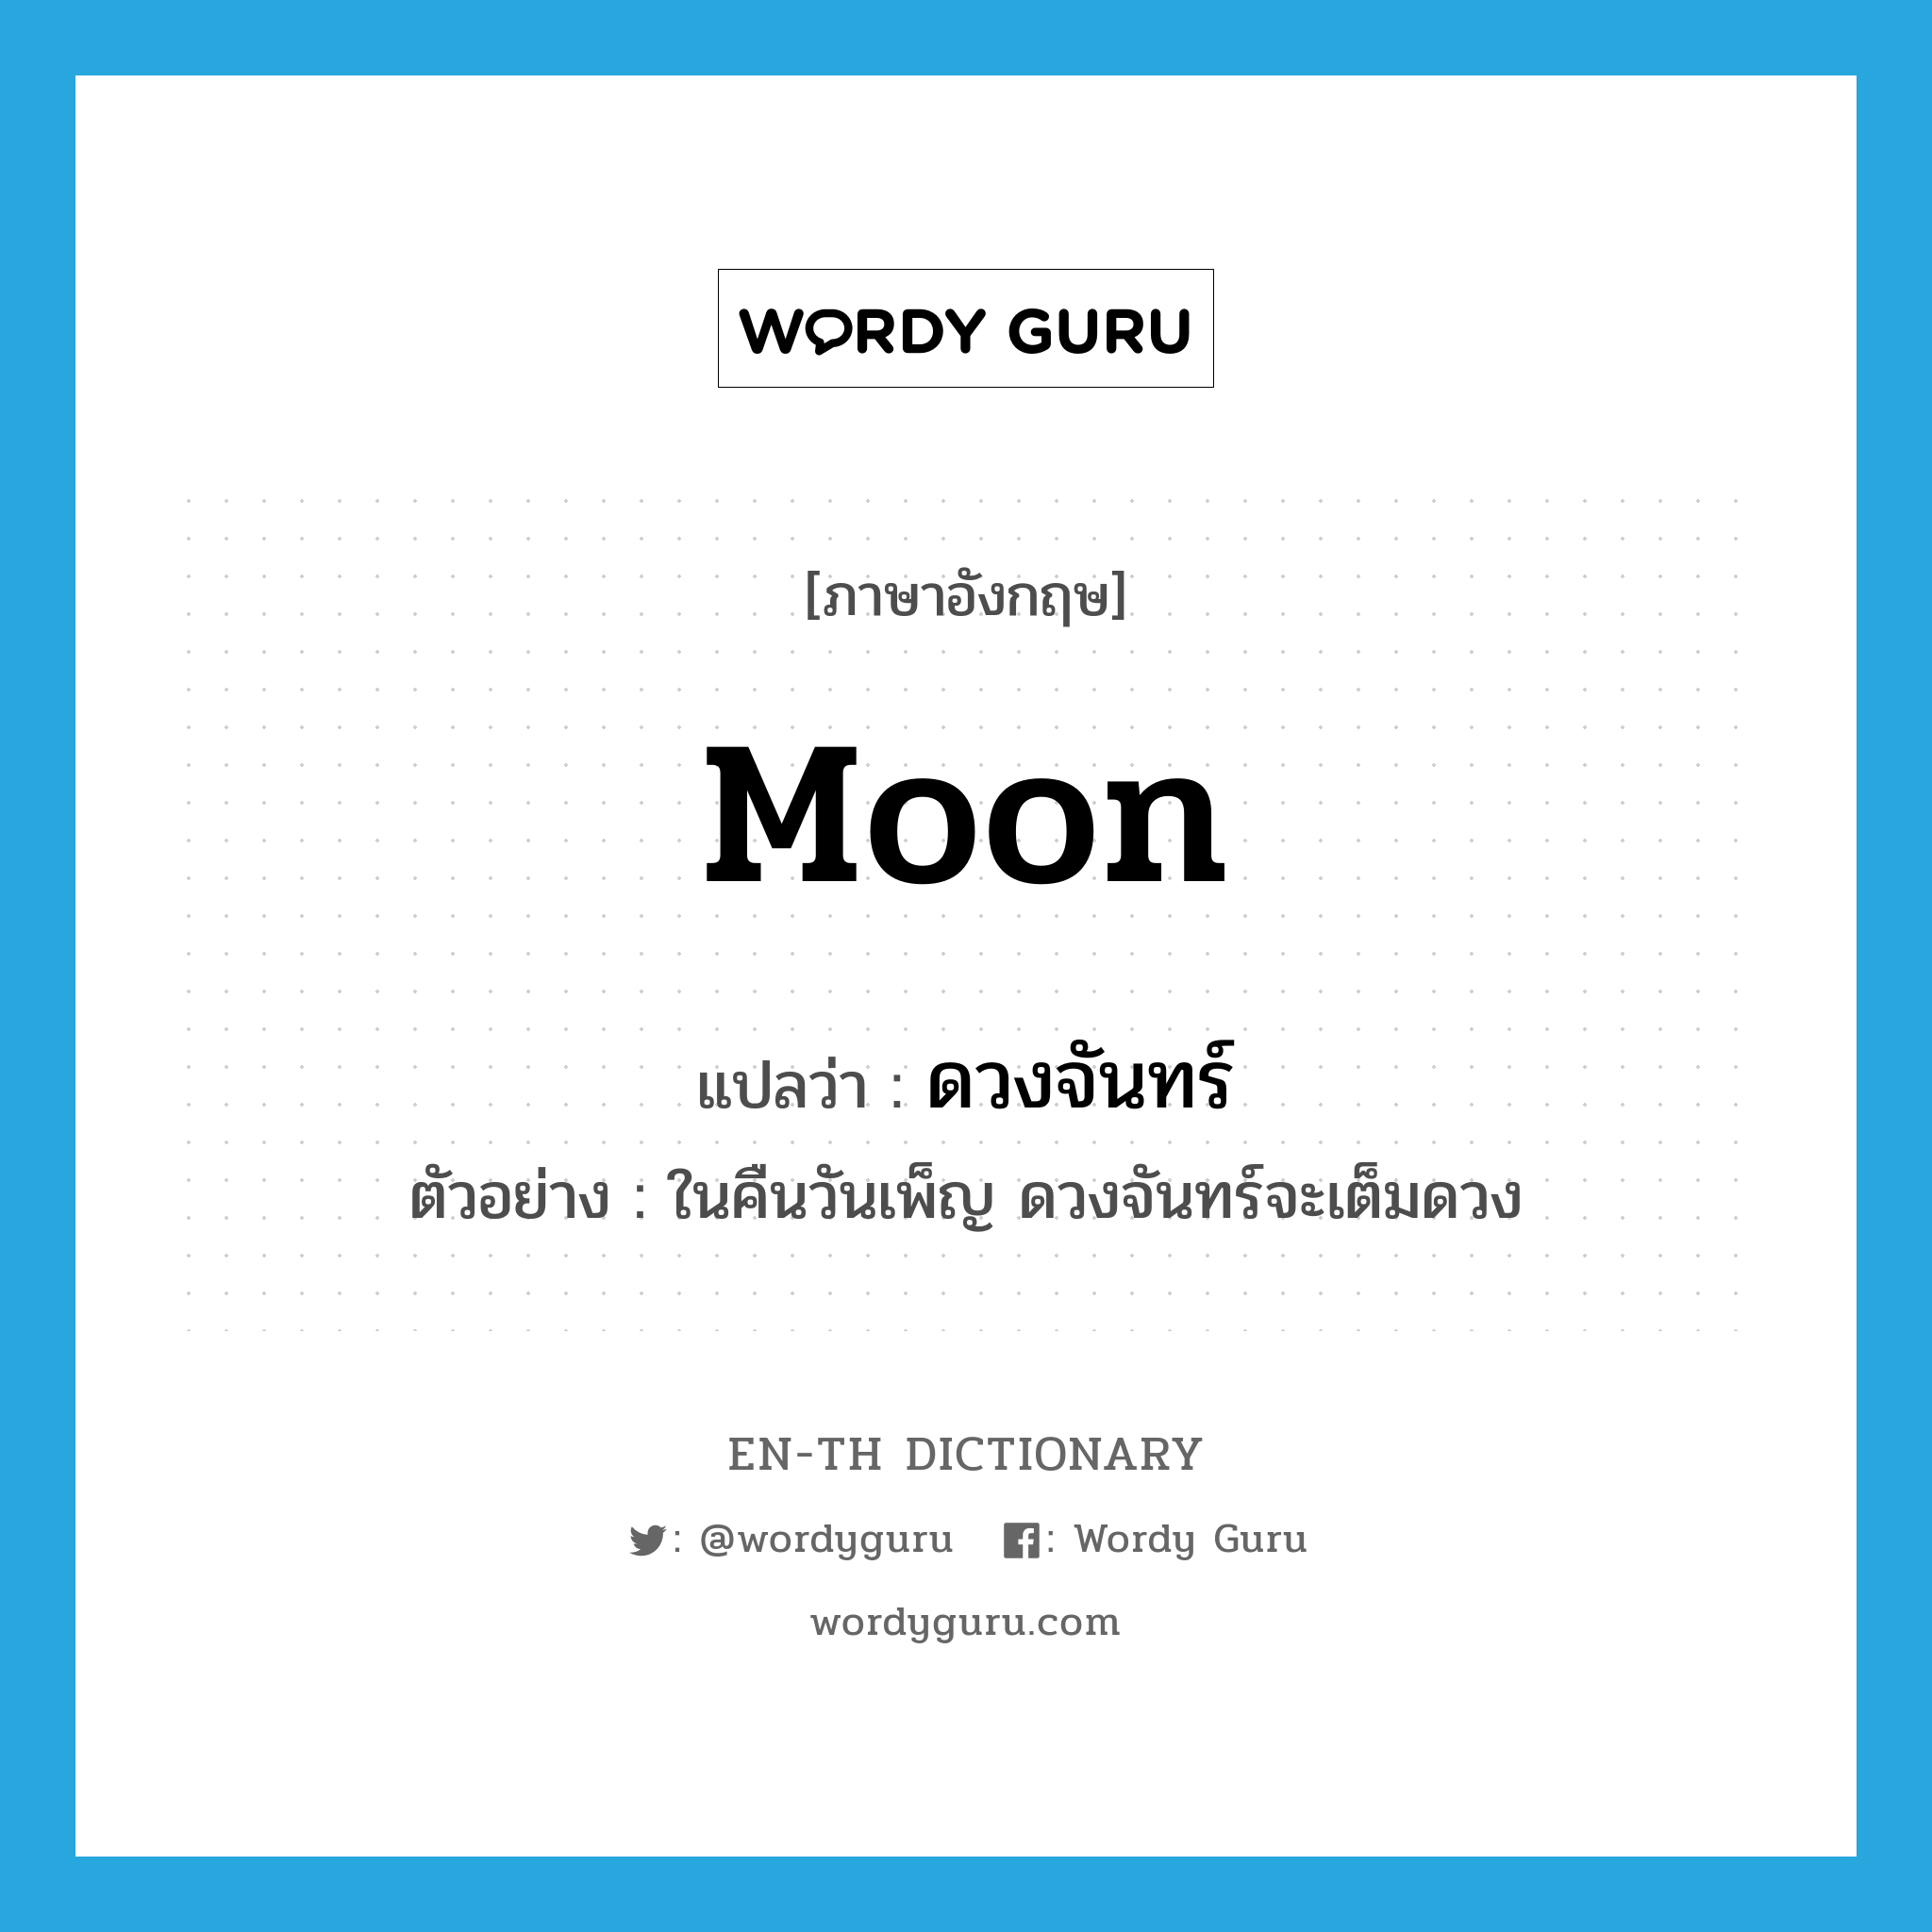 moon แปลว่า?, คำศัพท์ภาษาอังกฤษ moon แปลว่า ดวงจันทร์ ประเภท N ตัวอย่าง ในคืนวันเพ็ญ ดวงจันทร์จะเต็มดวง หมวด N